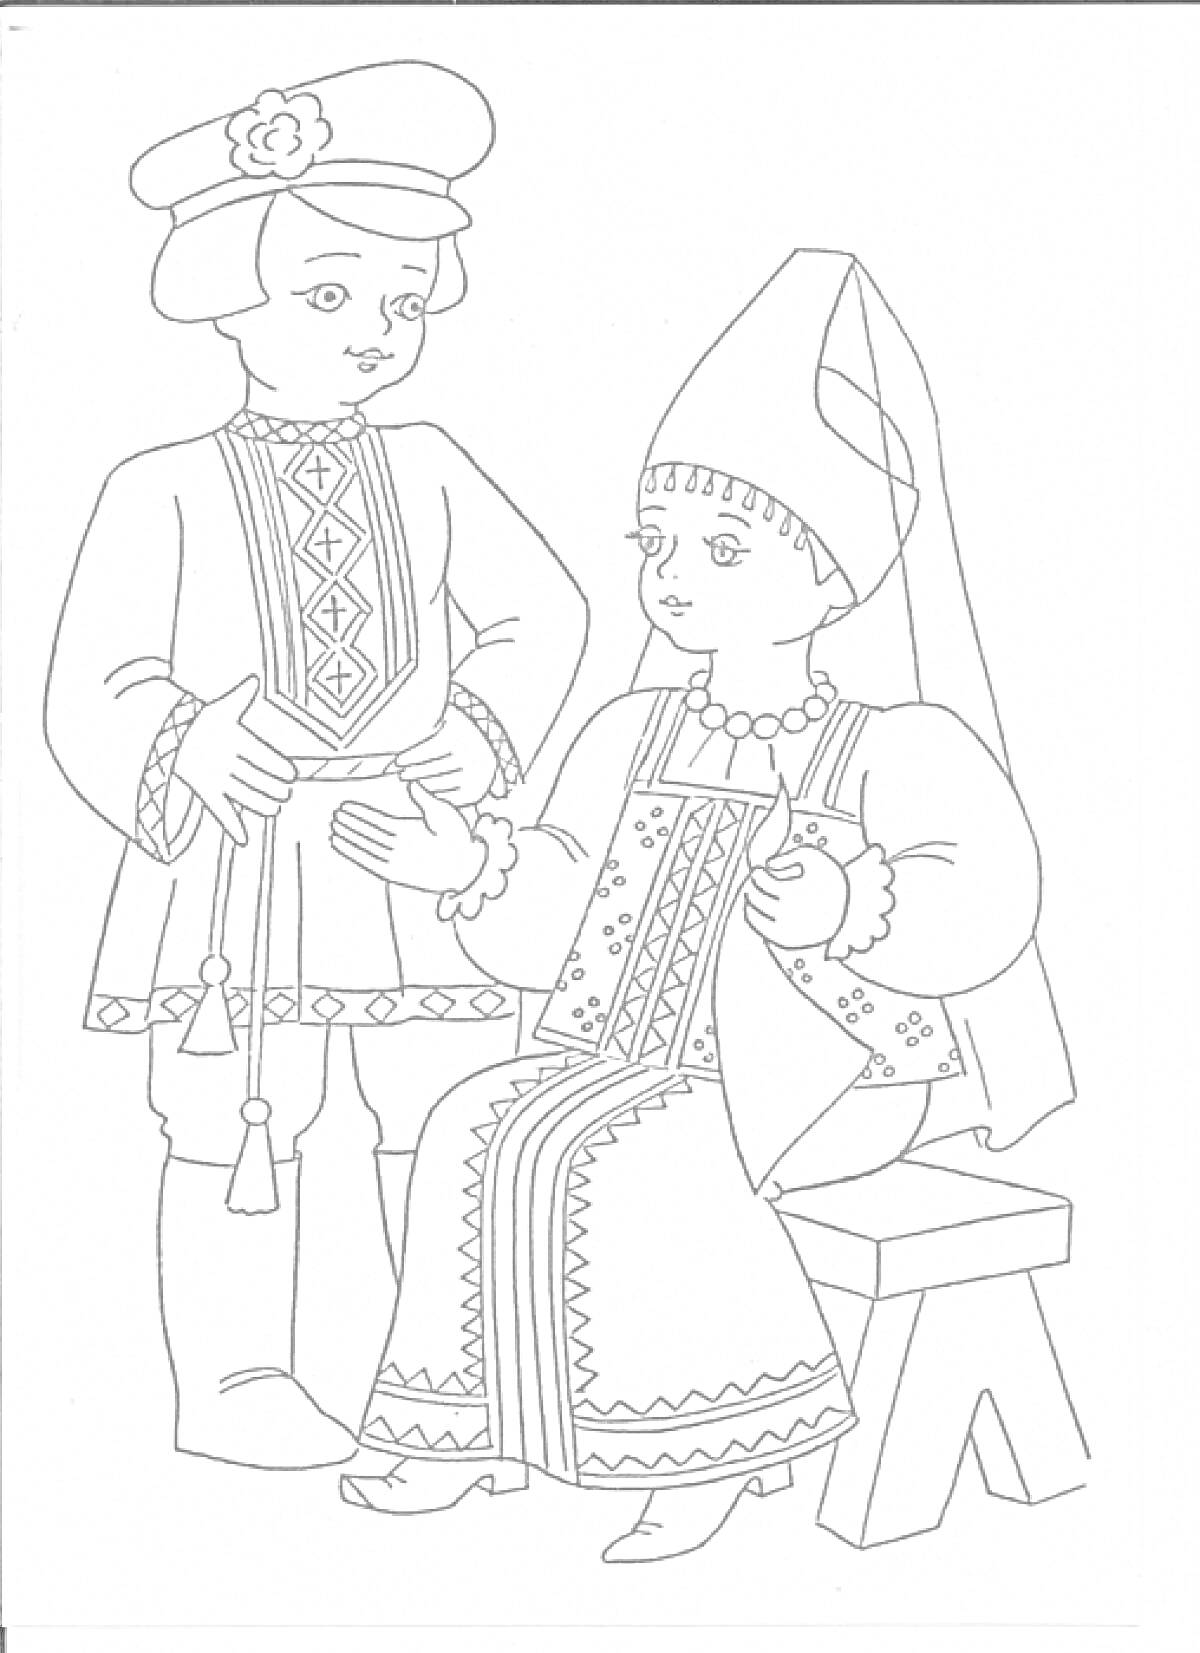 Русский народный костюм с девушкой в кокошнике и мужчину в рубахе с поясом